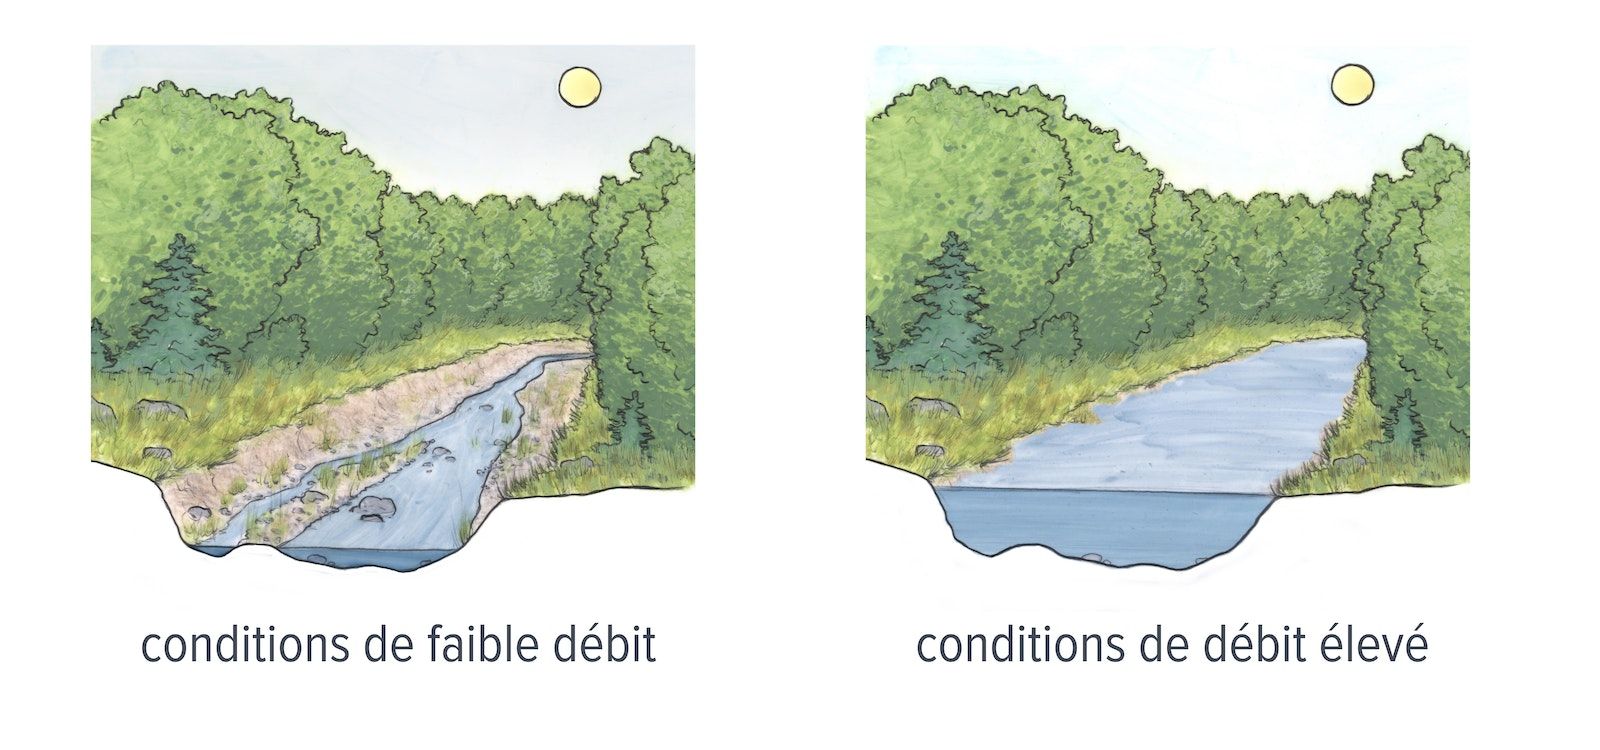 Deux images dessinées à la main d'un ruisseau avec des arbres sur les deux rives. Le dessin de gauche montre des conditions de faible débit et celui de droite des conditions de débit élevé.